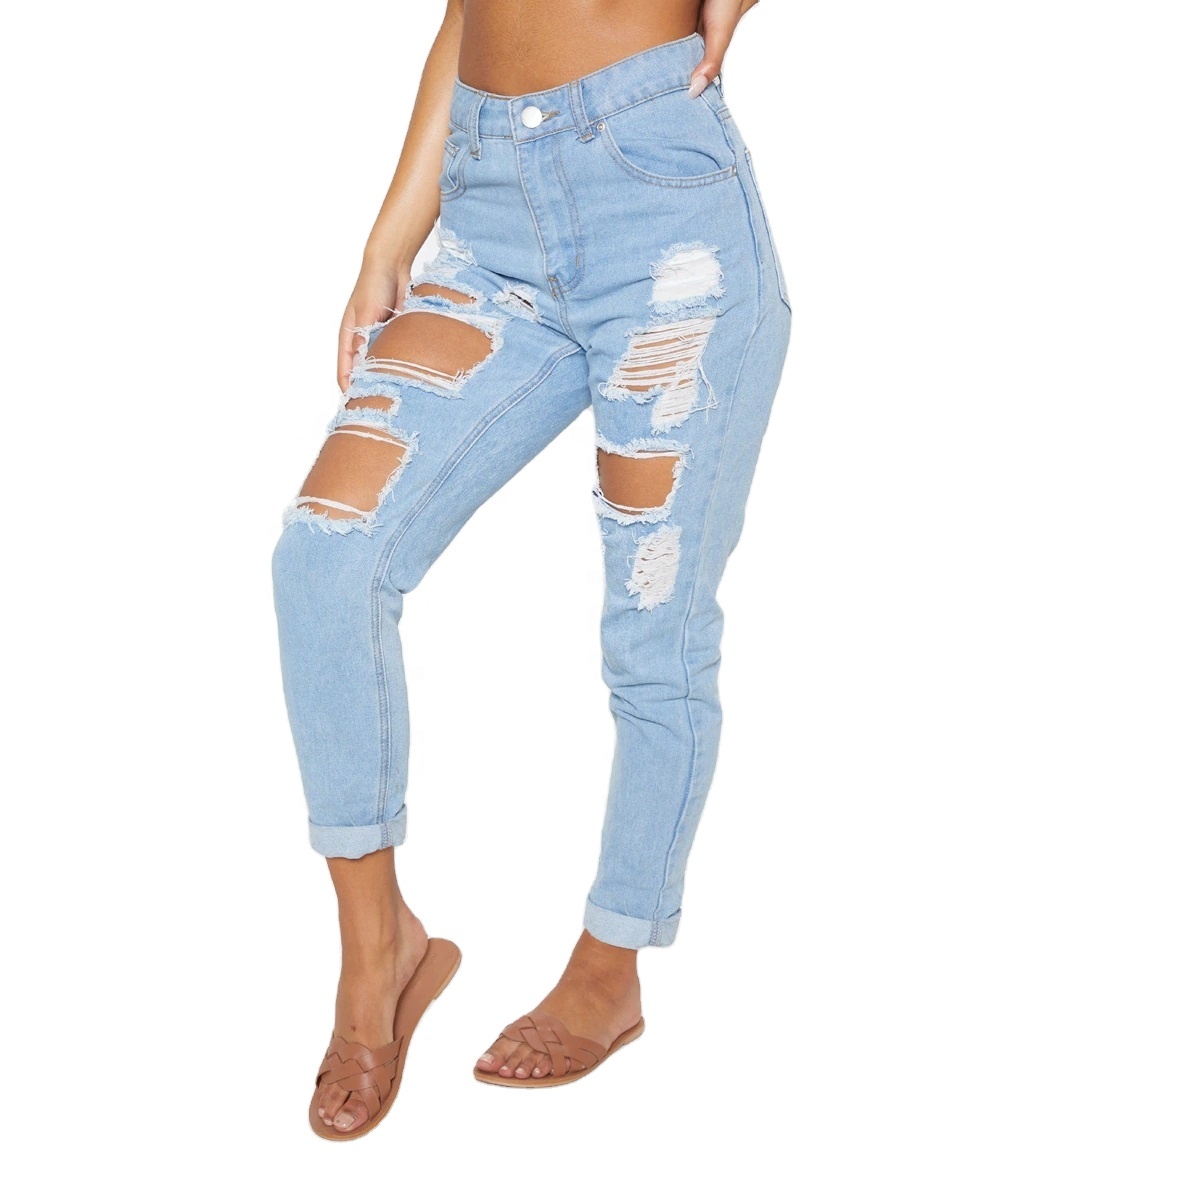 new arrivals 2020 fall jeans fabrics ripped skinny women jeans denim